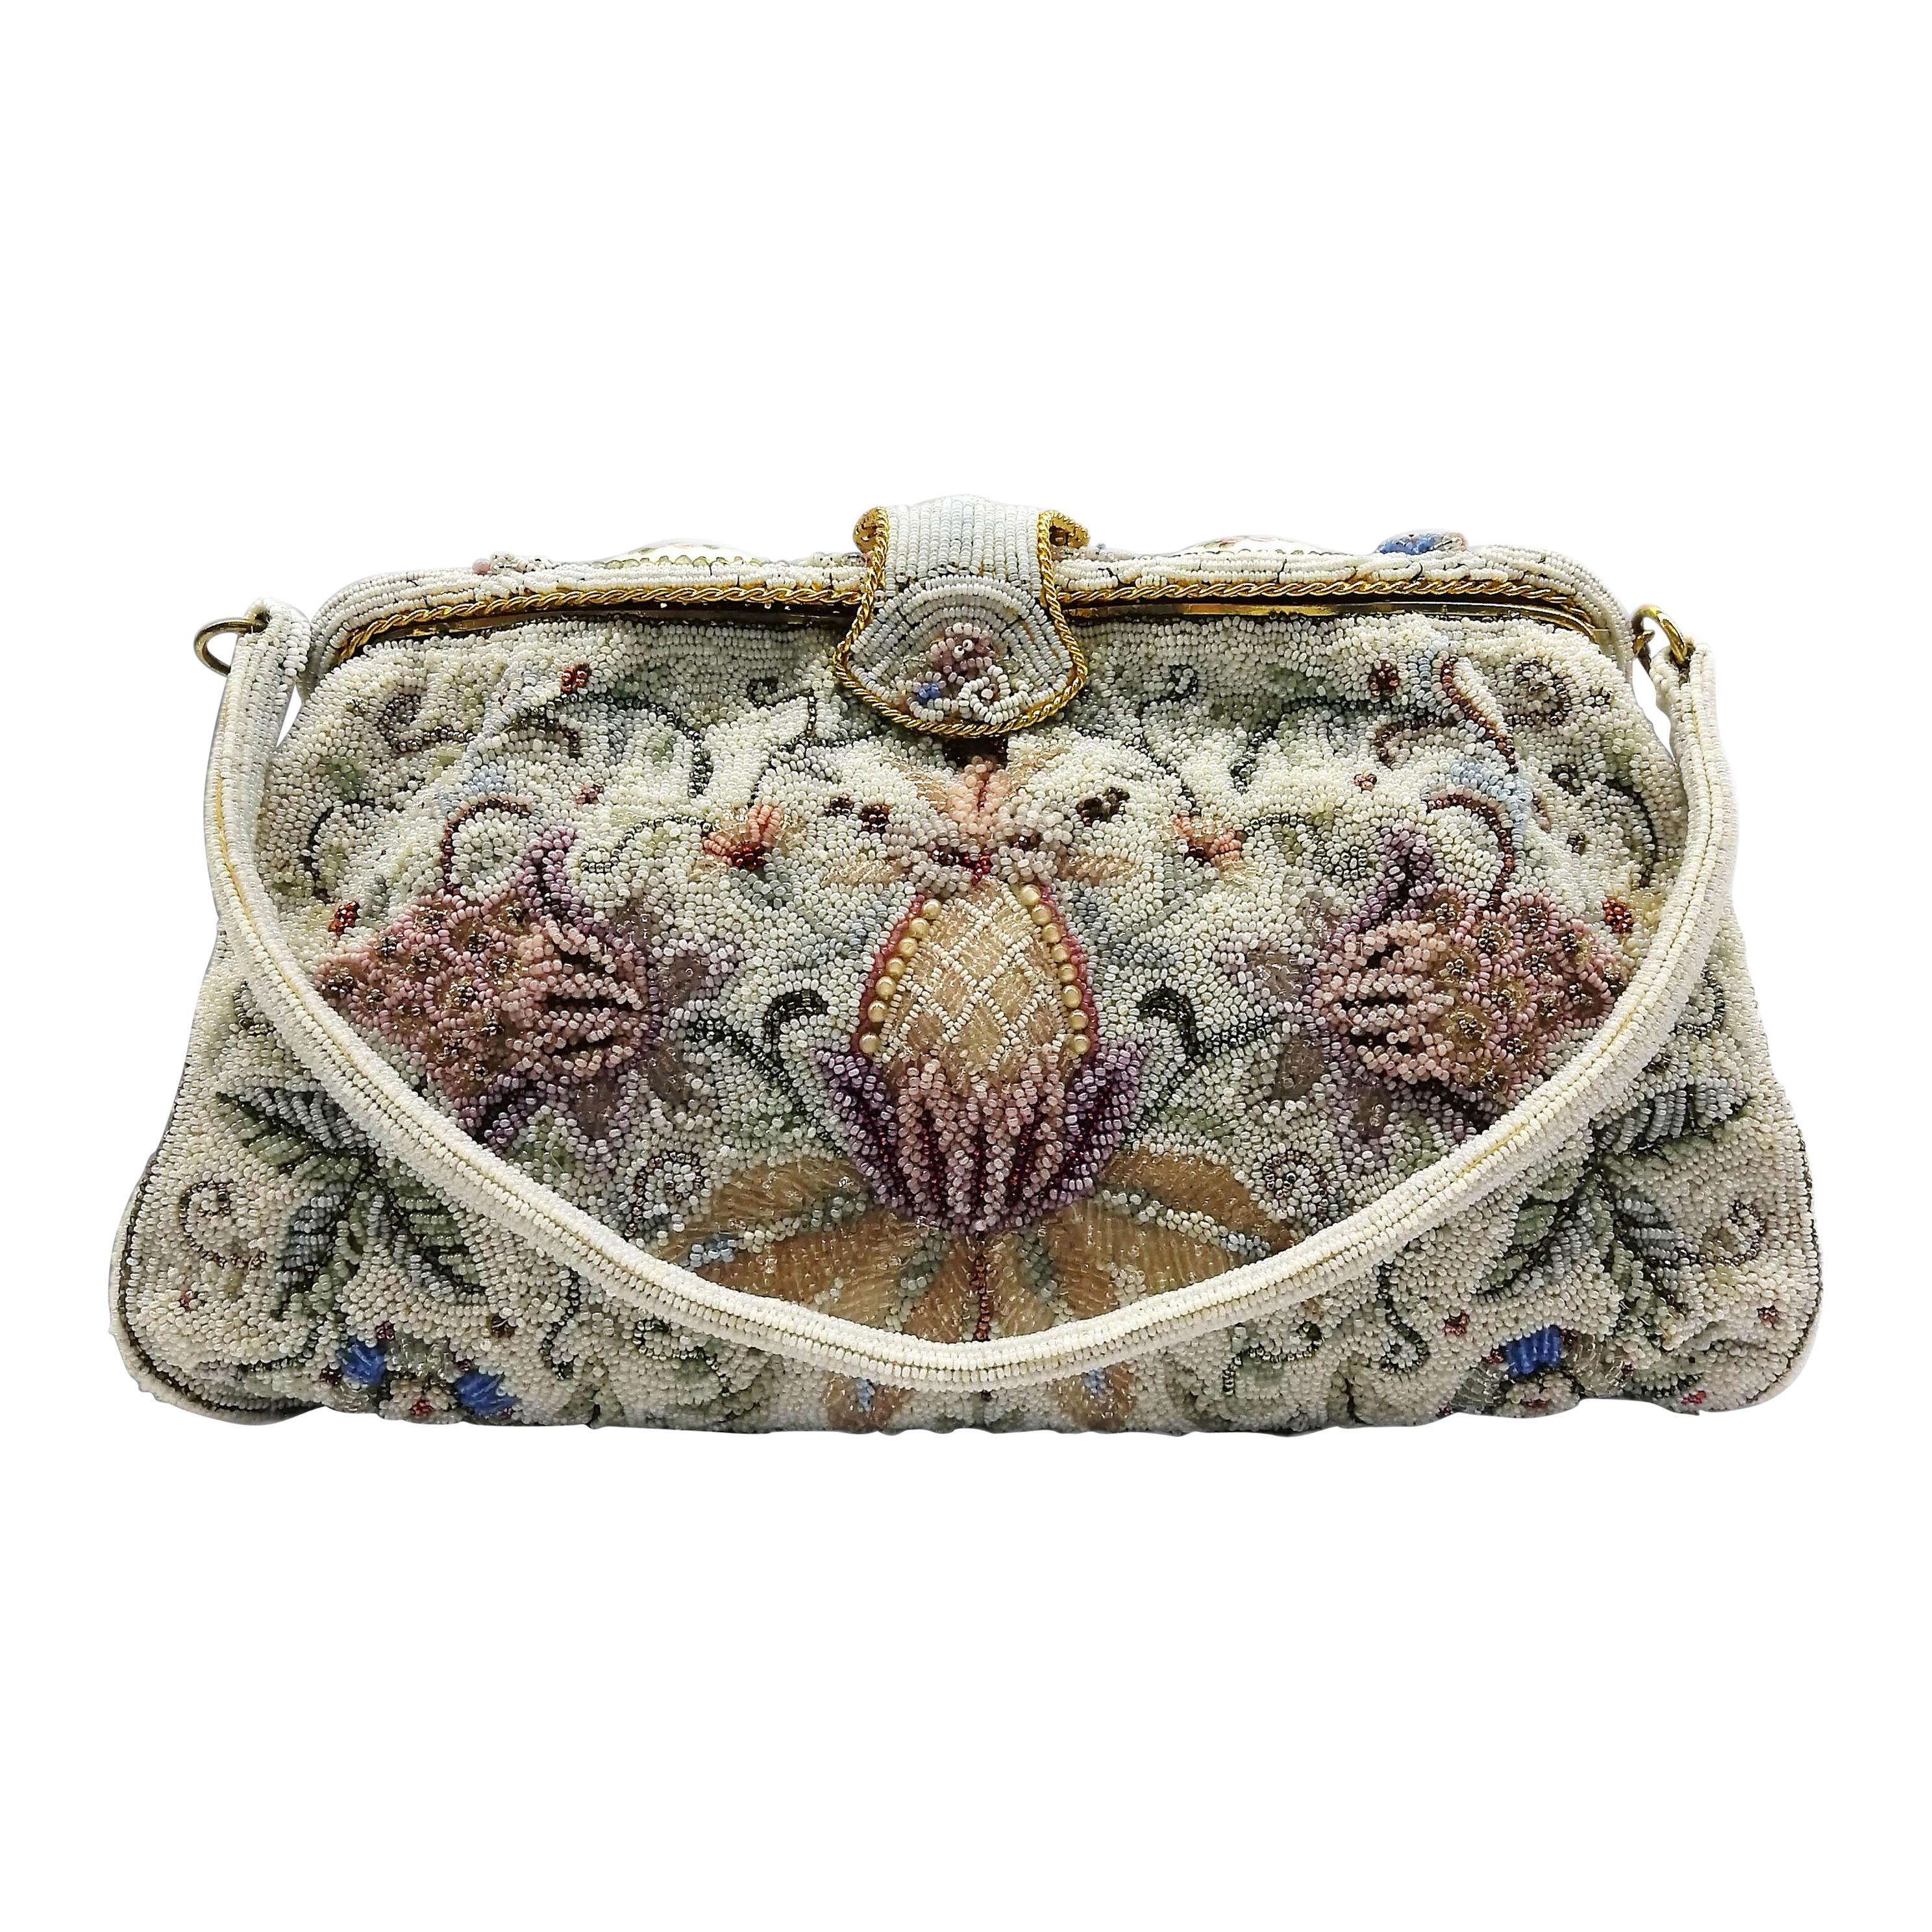 Very intricate micro-bead handbag with 'floral' design', Capion, Paris, 1950s